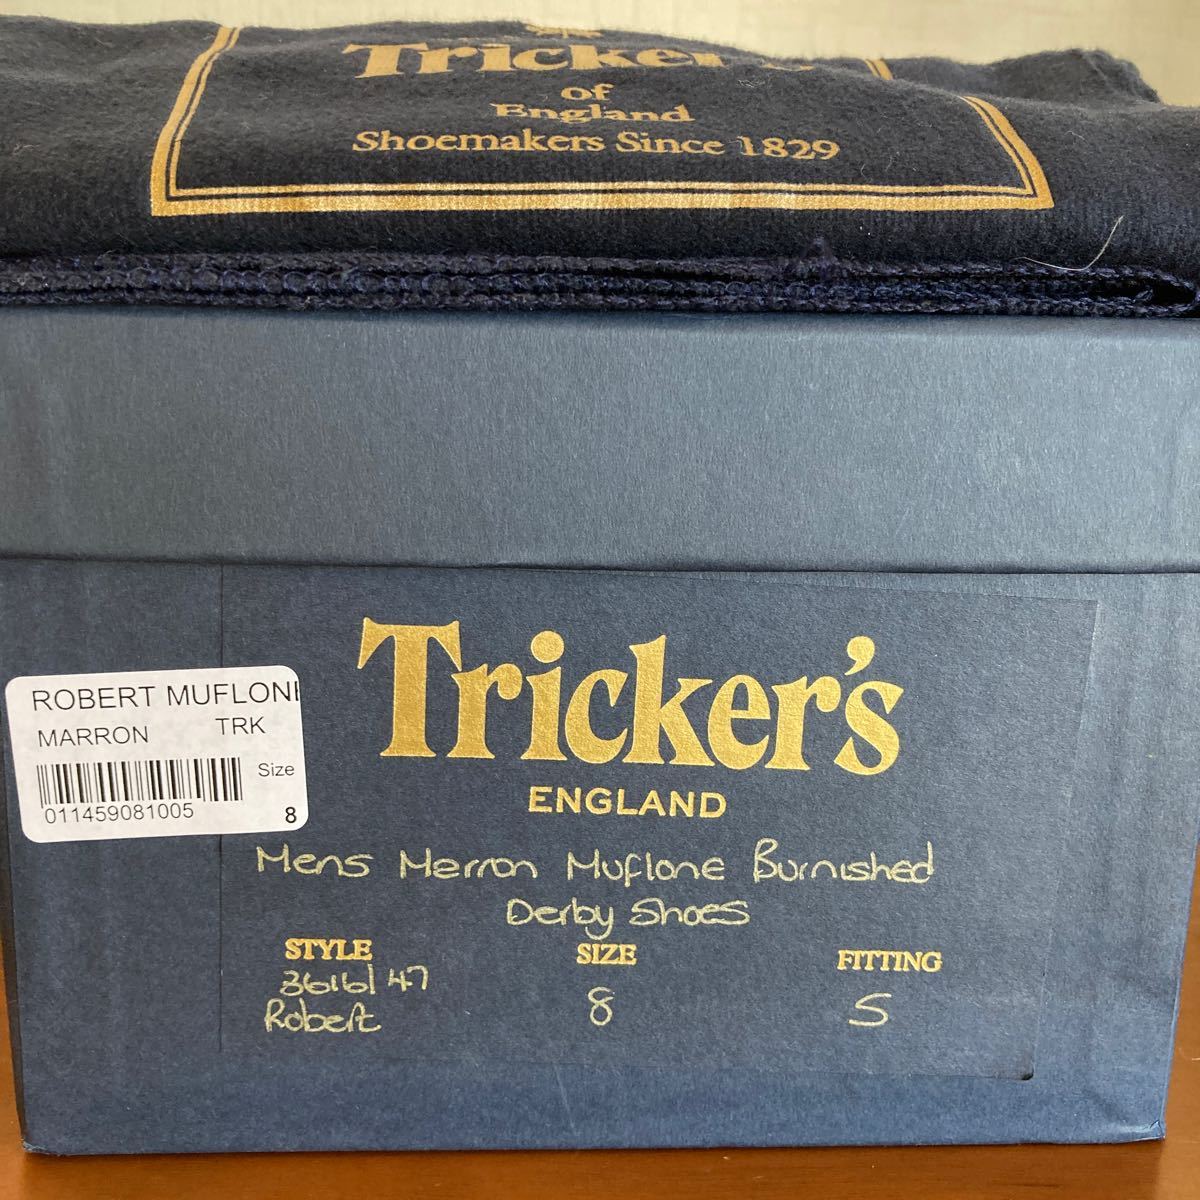 未使用品　Tricker's トリッカーズ 3616147 ROBERT ロバートMUFLONE BURNISHED DERBY SHOES MARRON サイズ8 FITTING 5 ブラウン マロン革靴_画像9